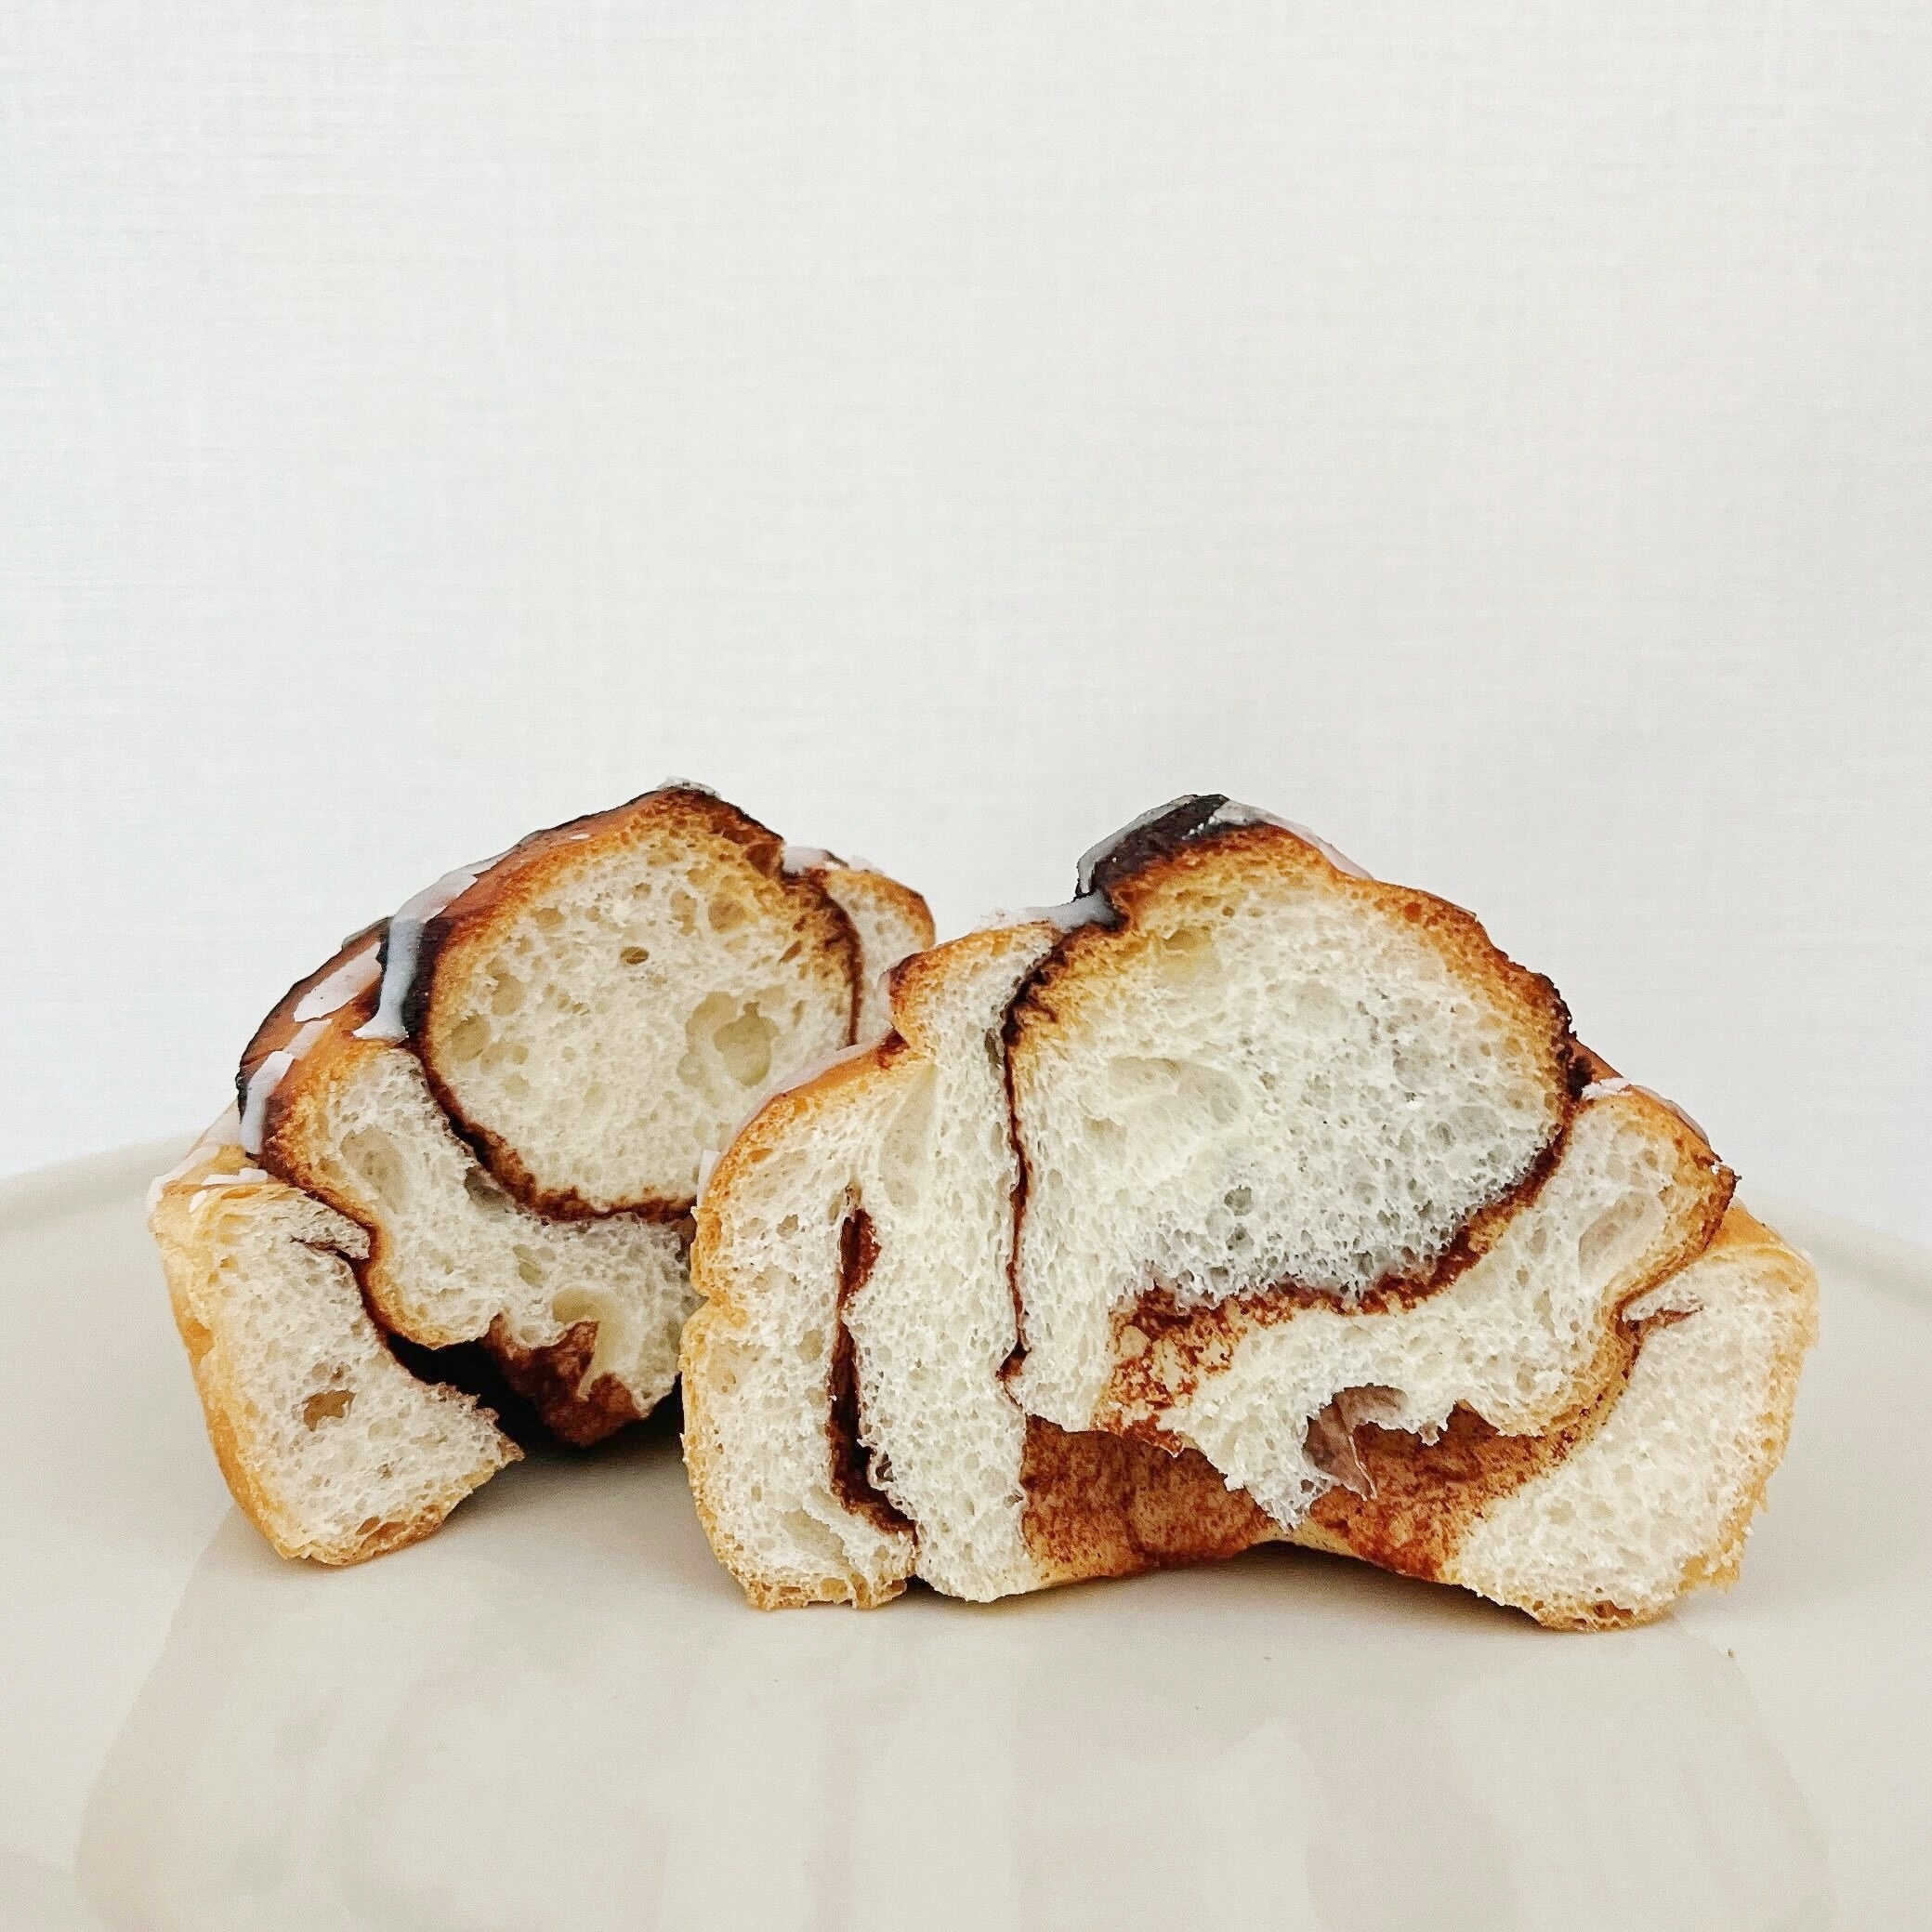 セブン-イレブンのオススメのパン「糖質を控えたシナモンロール」